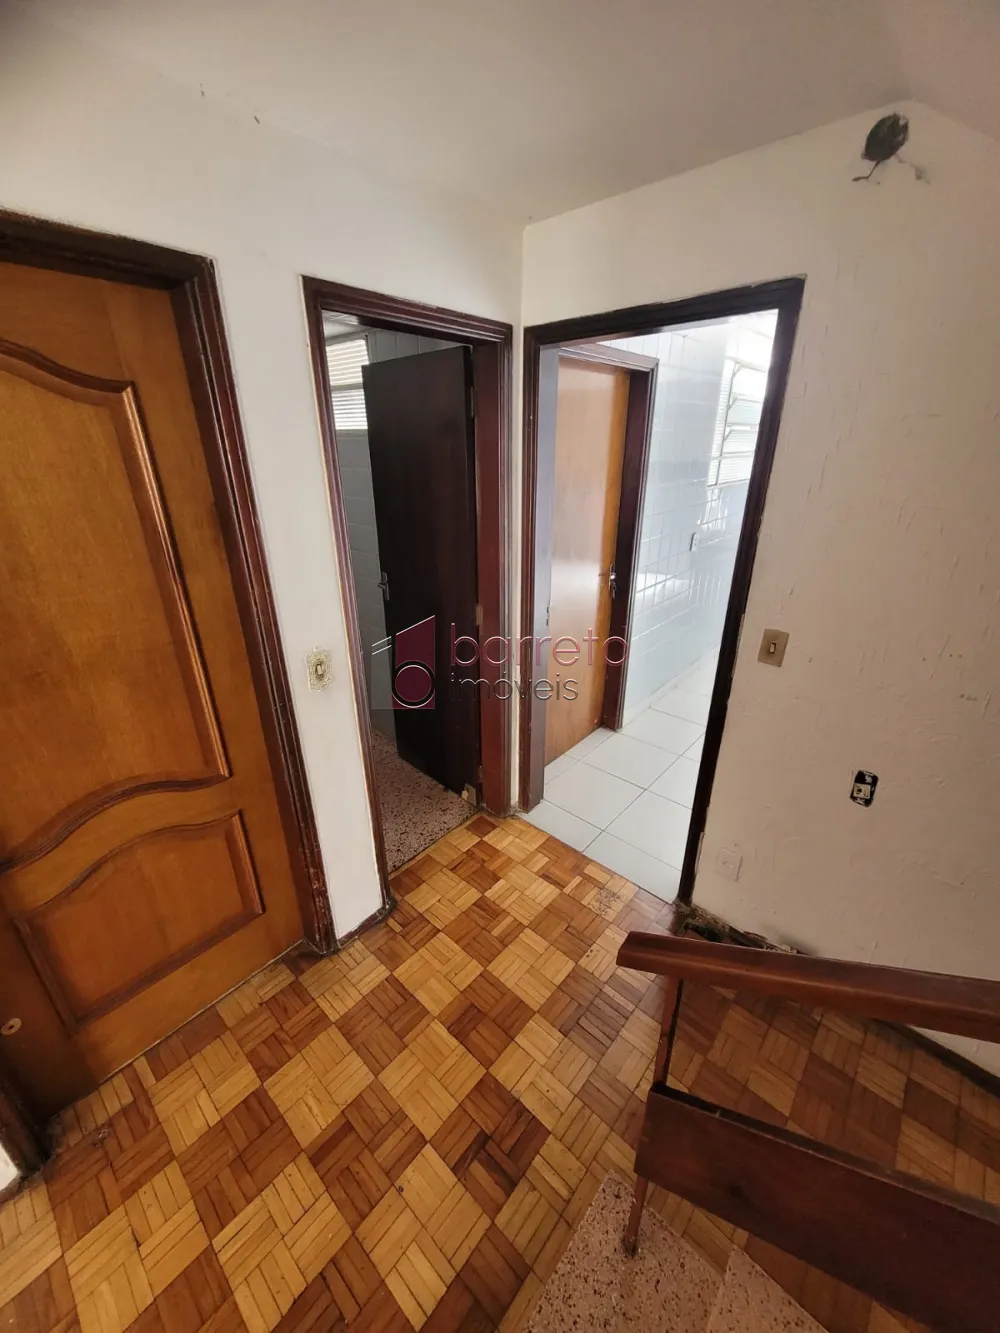 Comprar Casa / Sobrado em Jundiaí R$ 600.000,00 - Foto 4